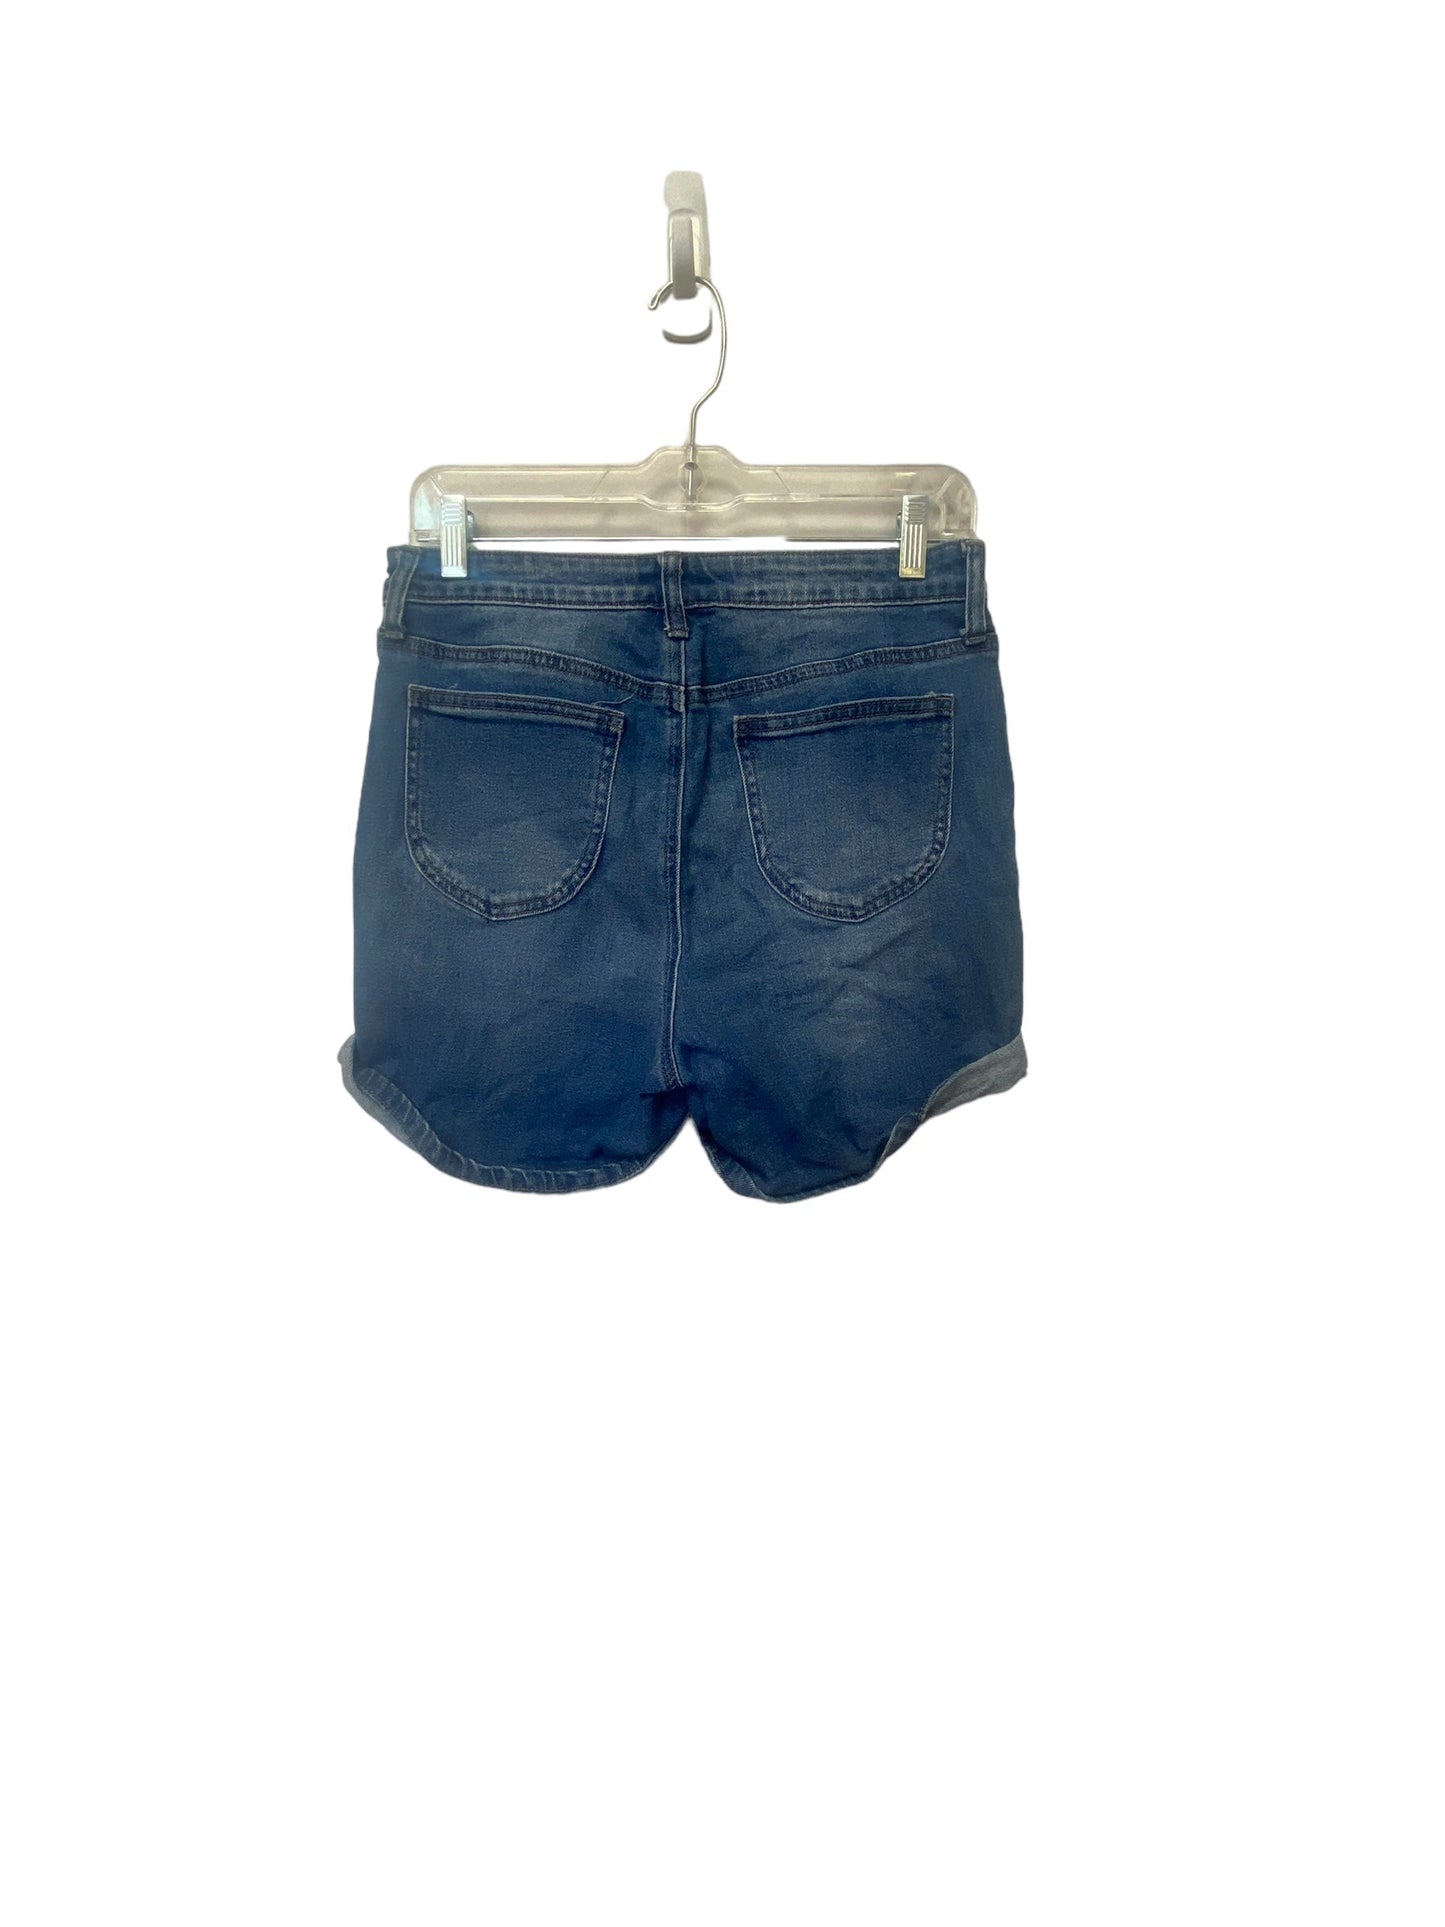 Blue Denim Shorts Abound, Size 28